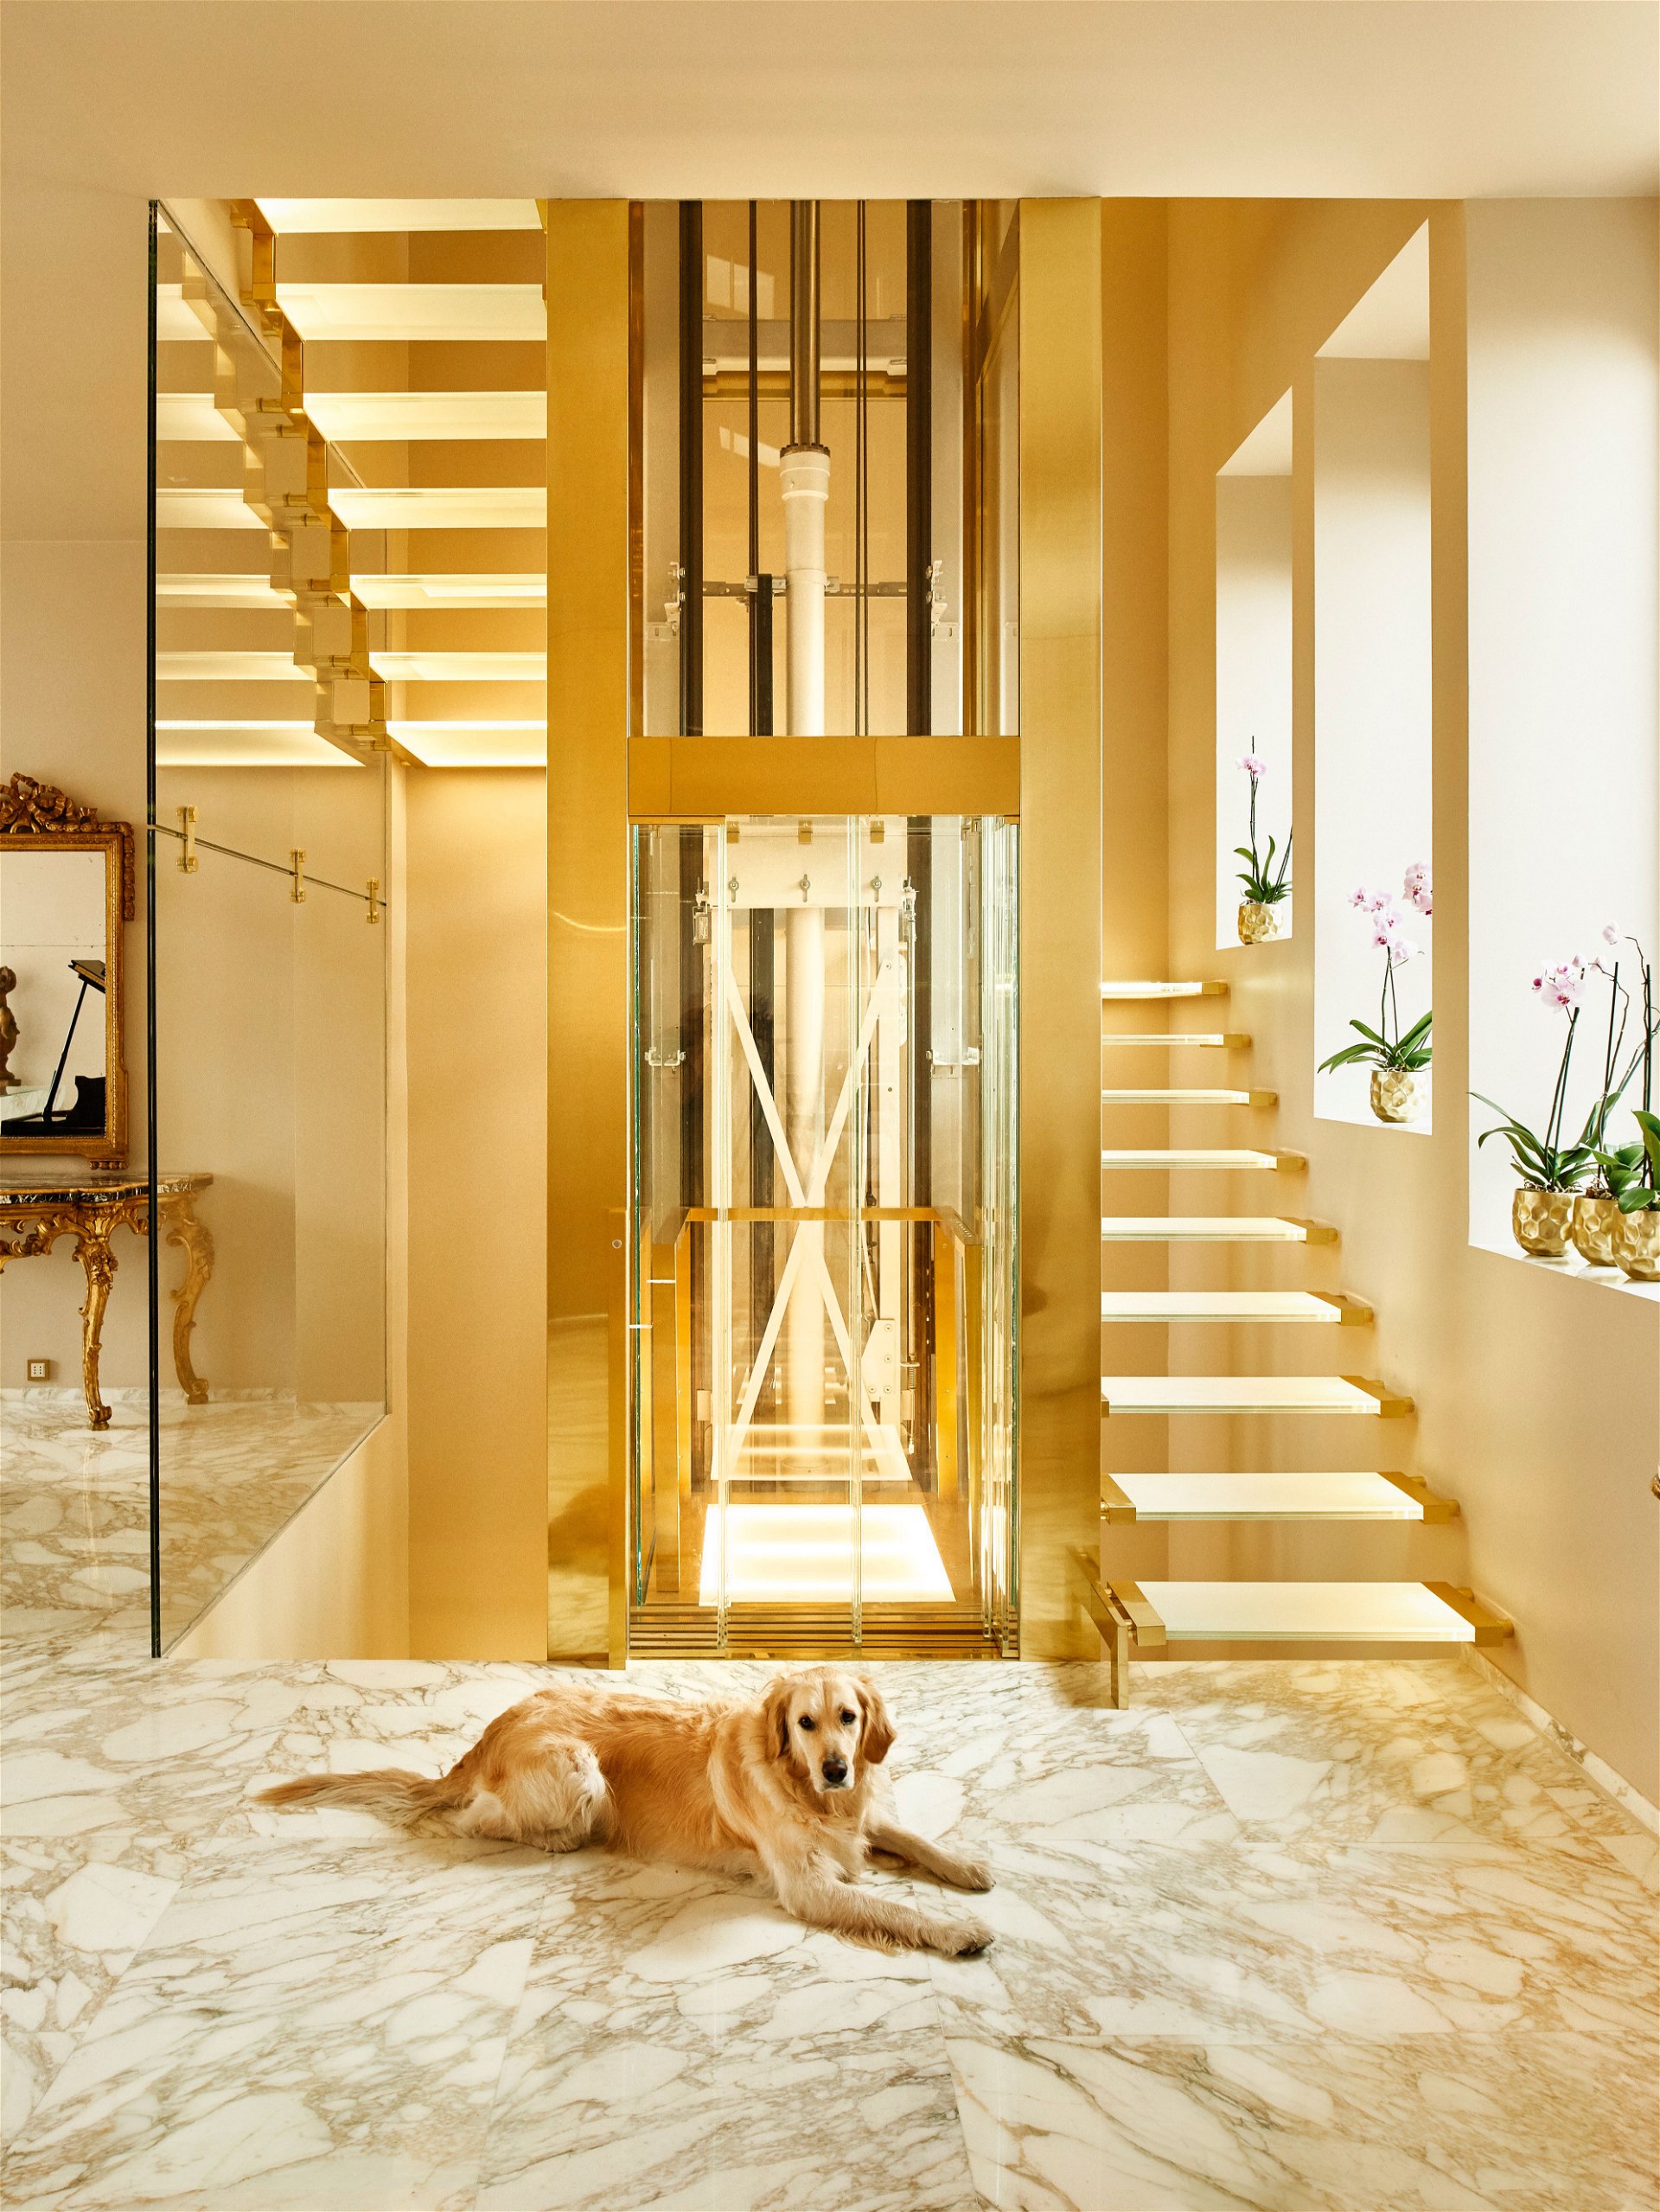 Stiegenhaus: Luna, ein Golden Retriever, empfängt alle Gäste bei ihrer Ankunft. Der speziell entworfene Lift führt in die oberen Etagen der Wohnung.